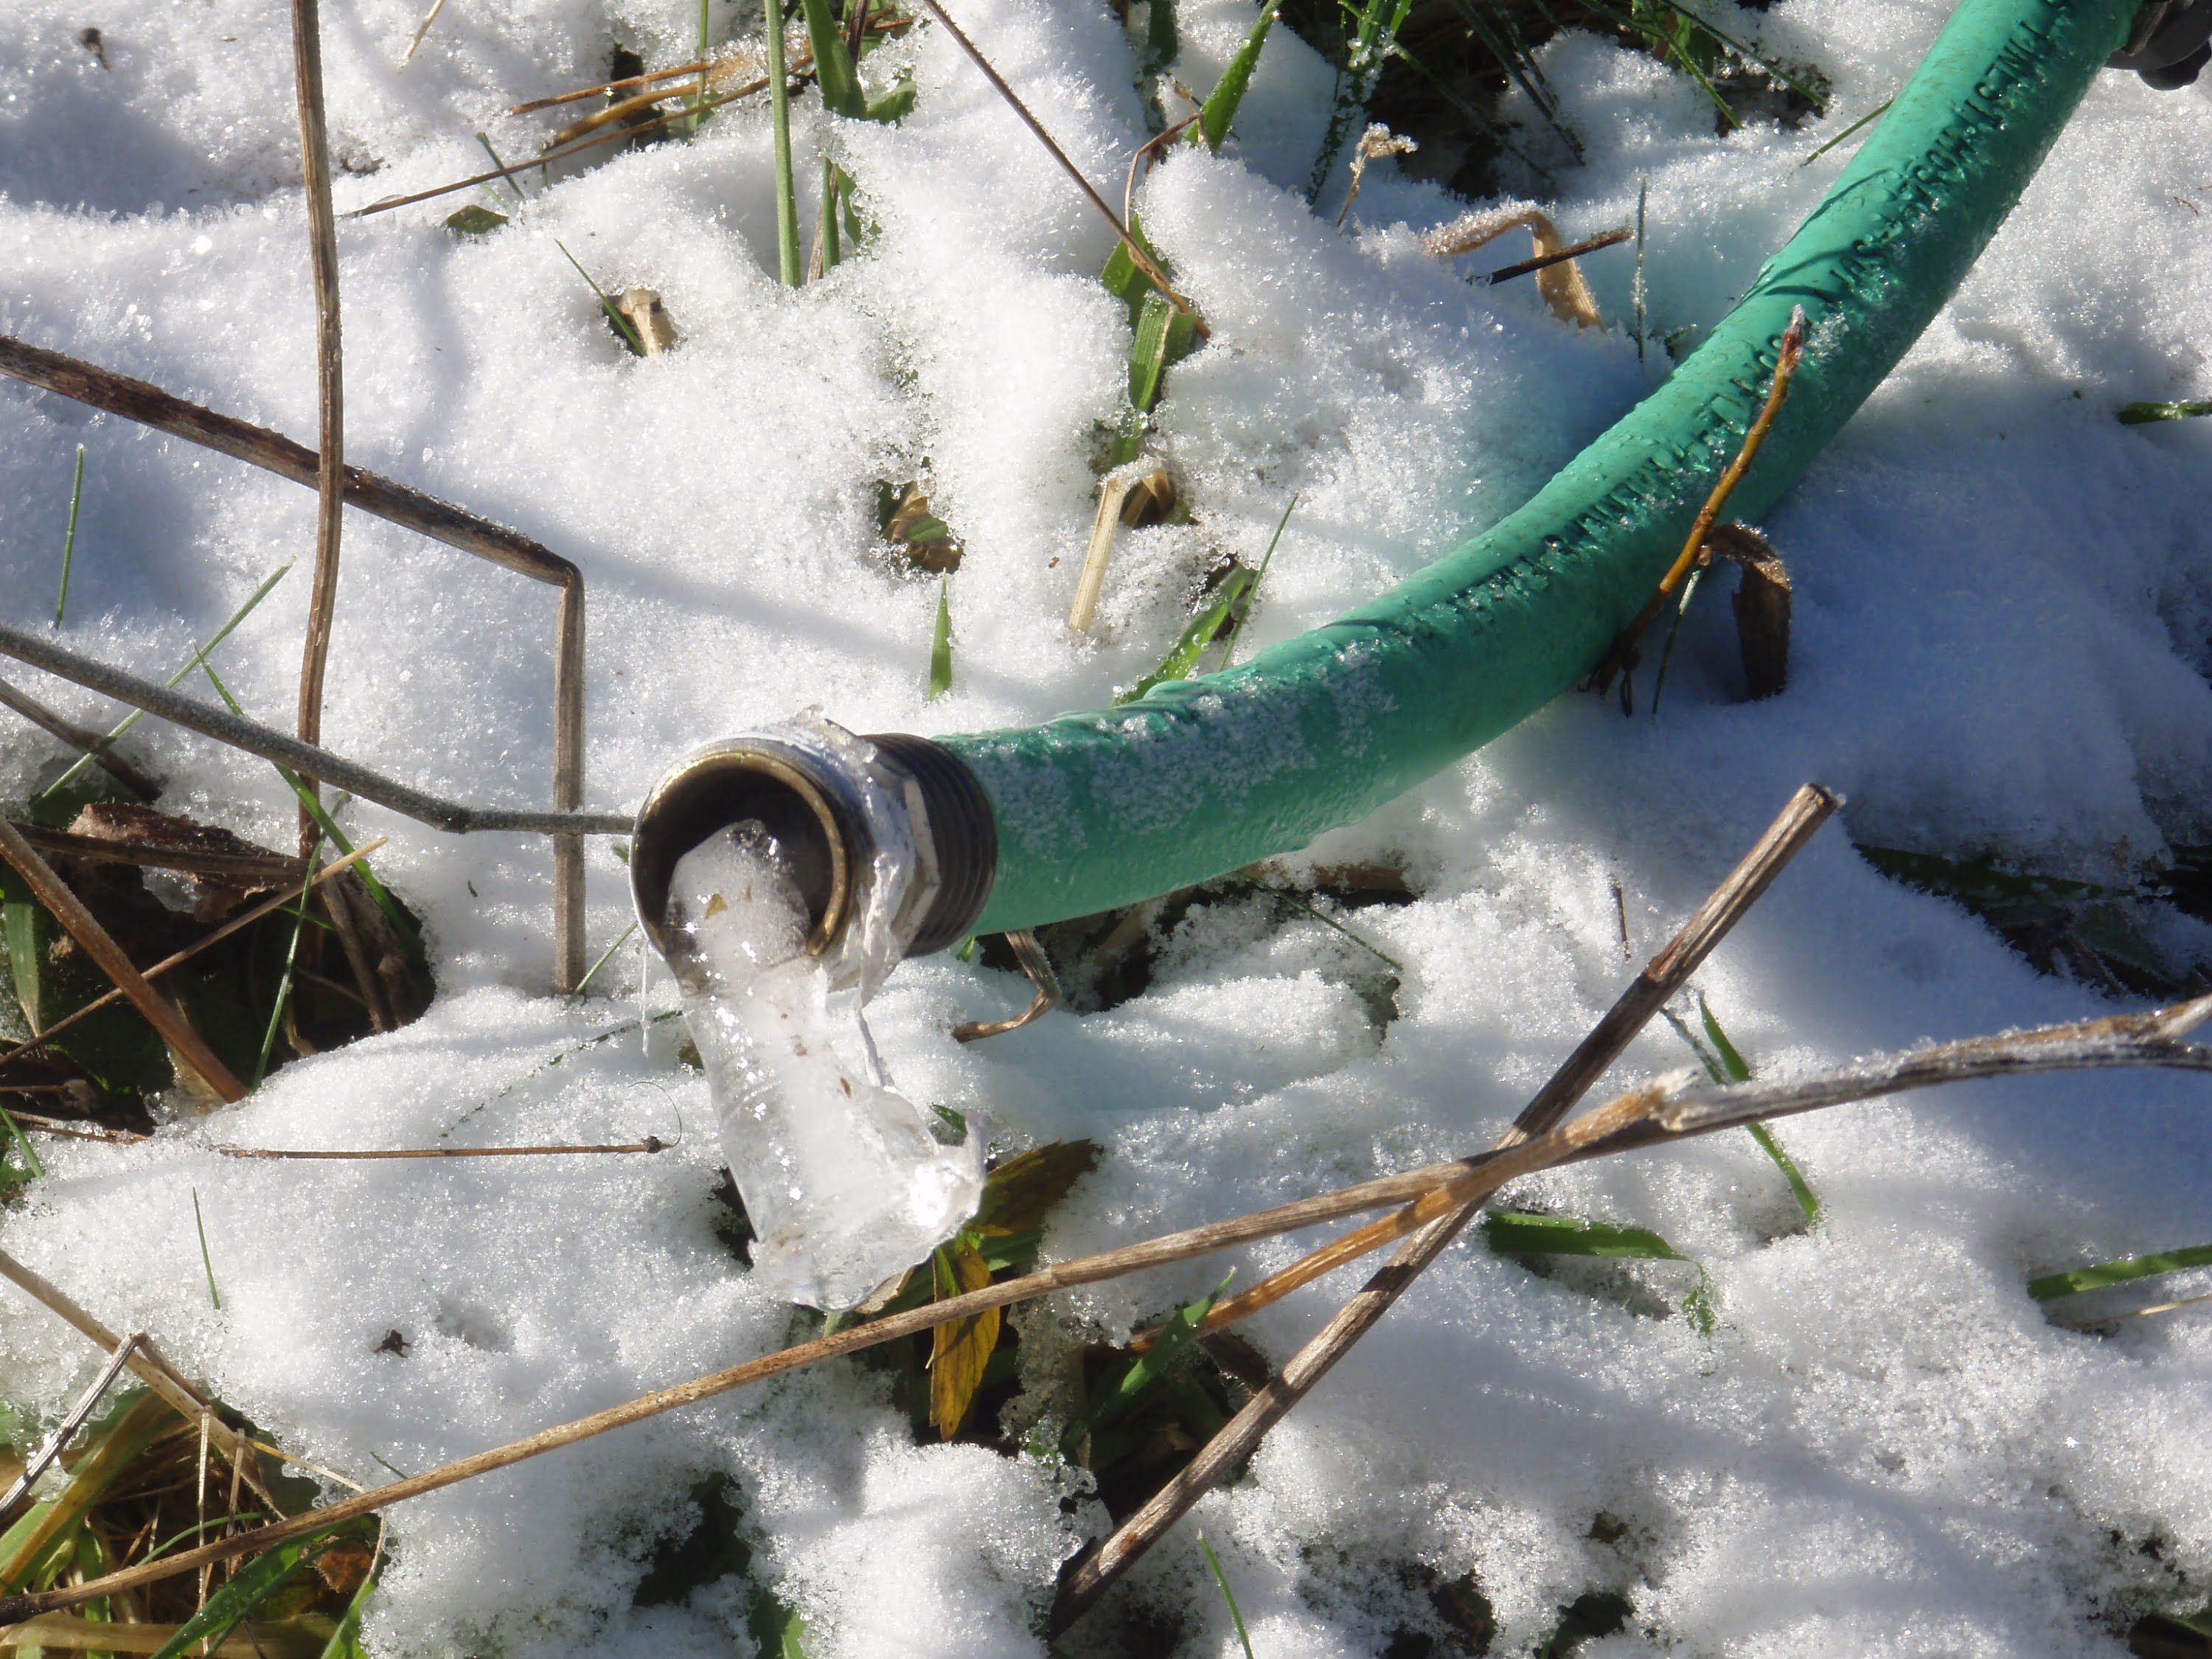 Frozen-hose